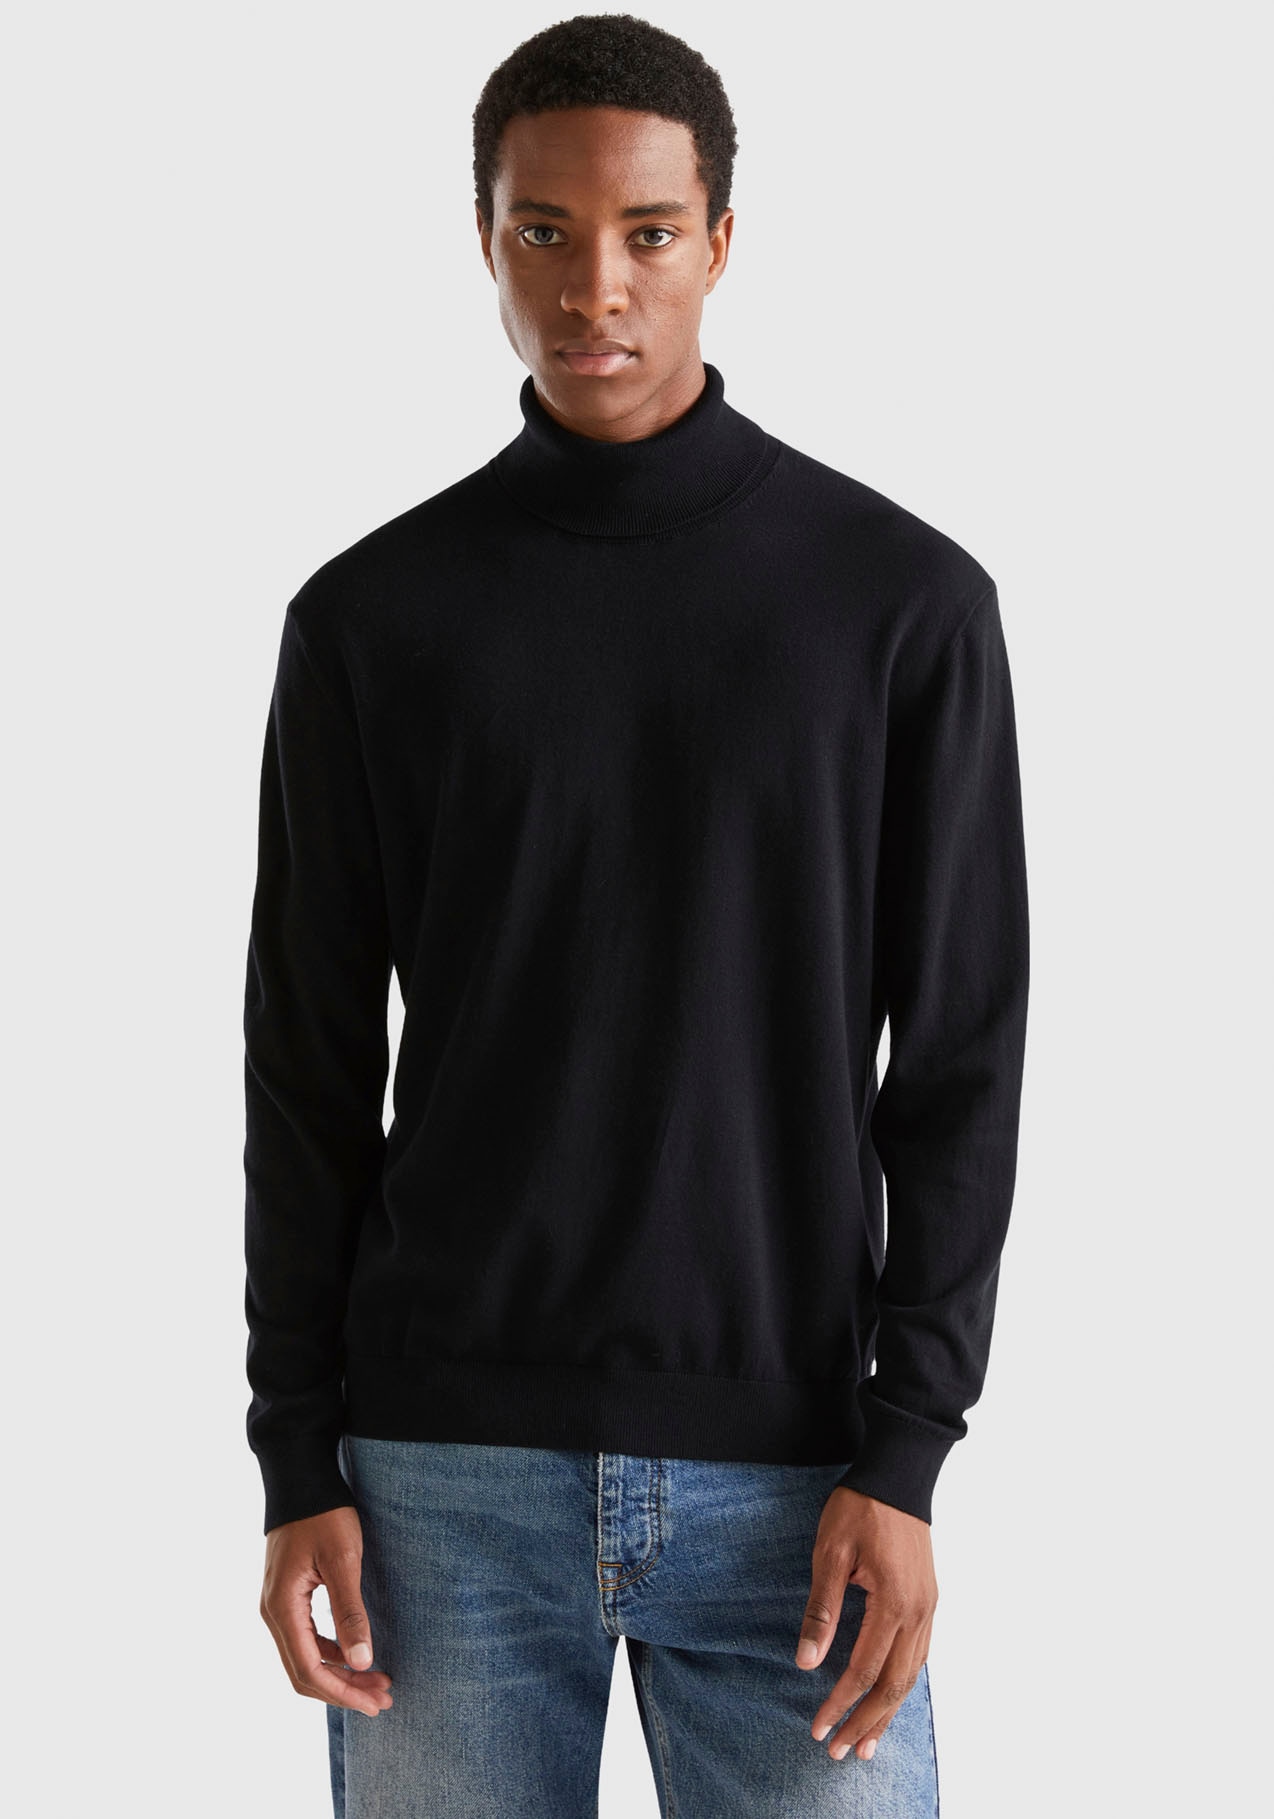 ➤ Pullover versandkostenfrei - ohne Mindestbestellwert kaufen